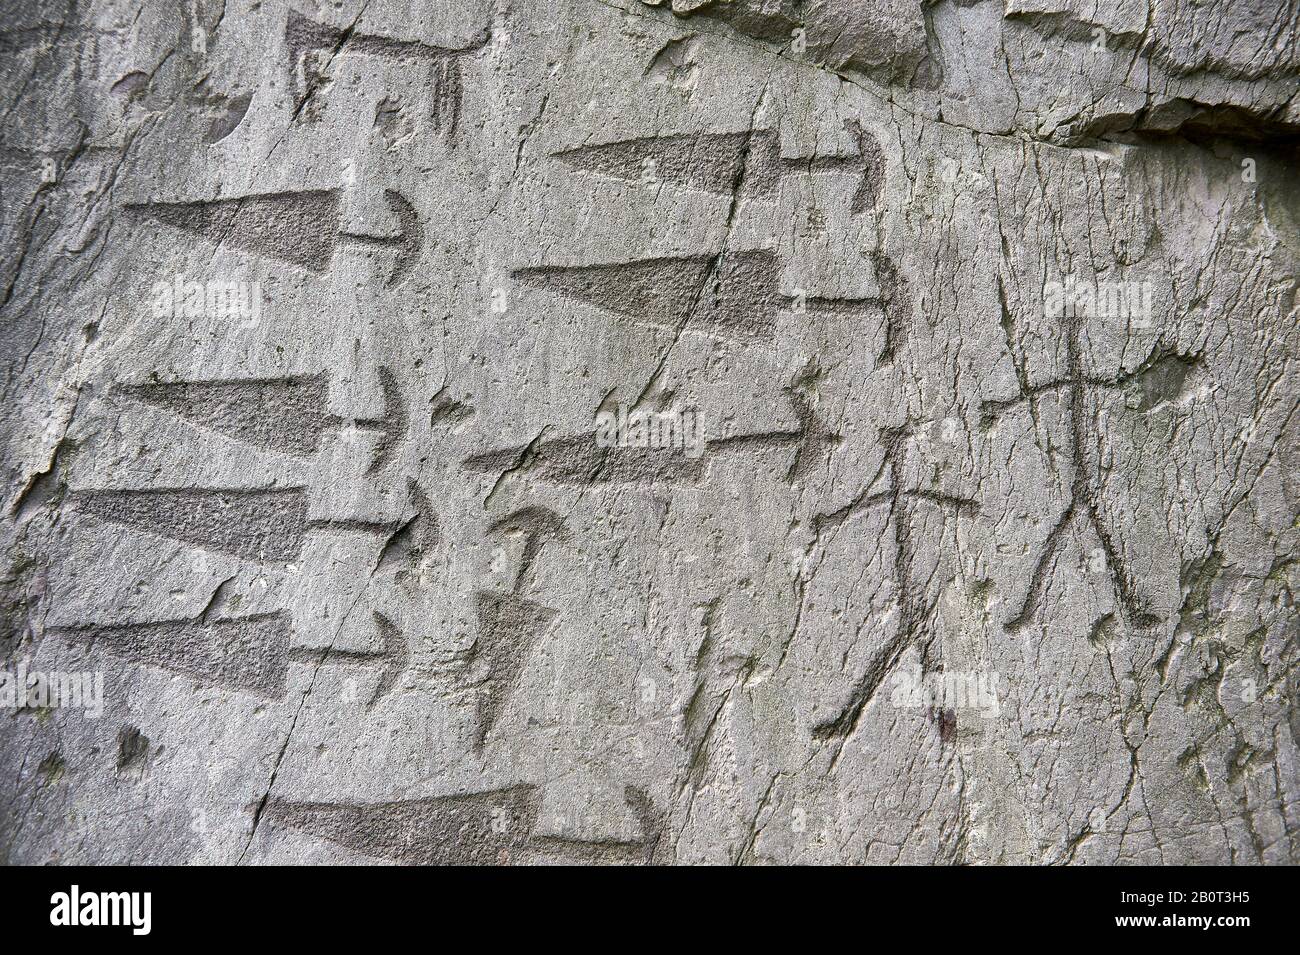 Pétroglyphes préhistoriques, sculptures rupestres, détails de poignards angulaires avec pommades semi-circulaires et représentations schématiques de figures humaines dans un anci Banque D'Images